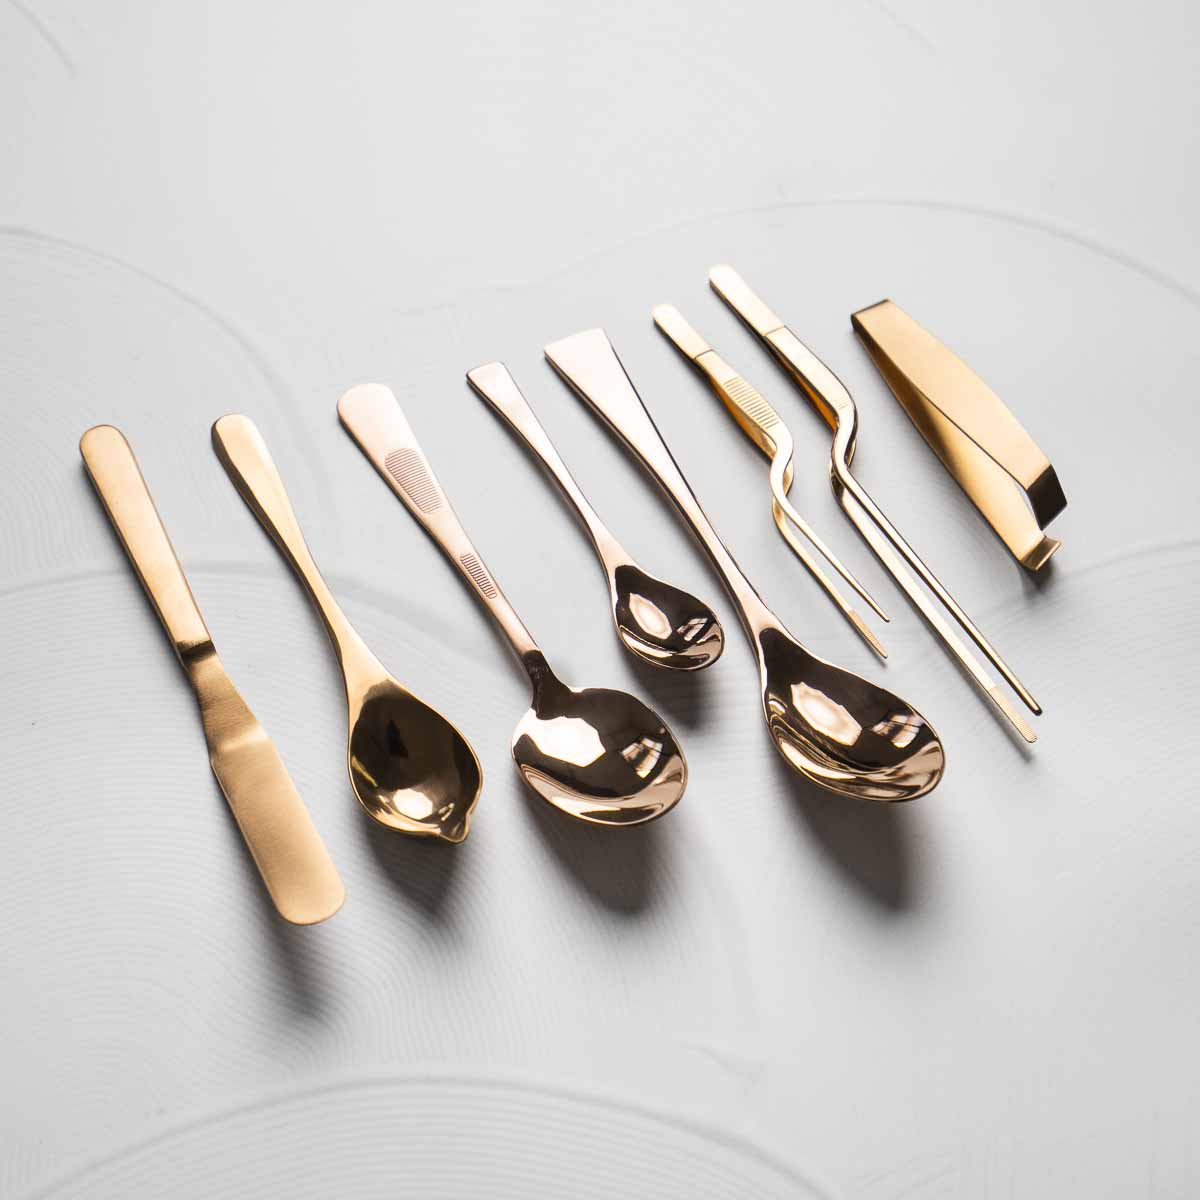 Premium Chef Tool Bundle - Copper